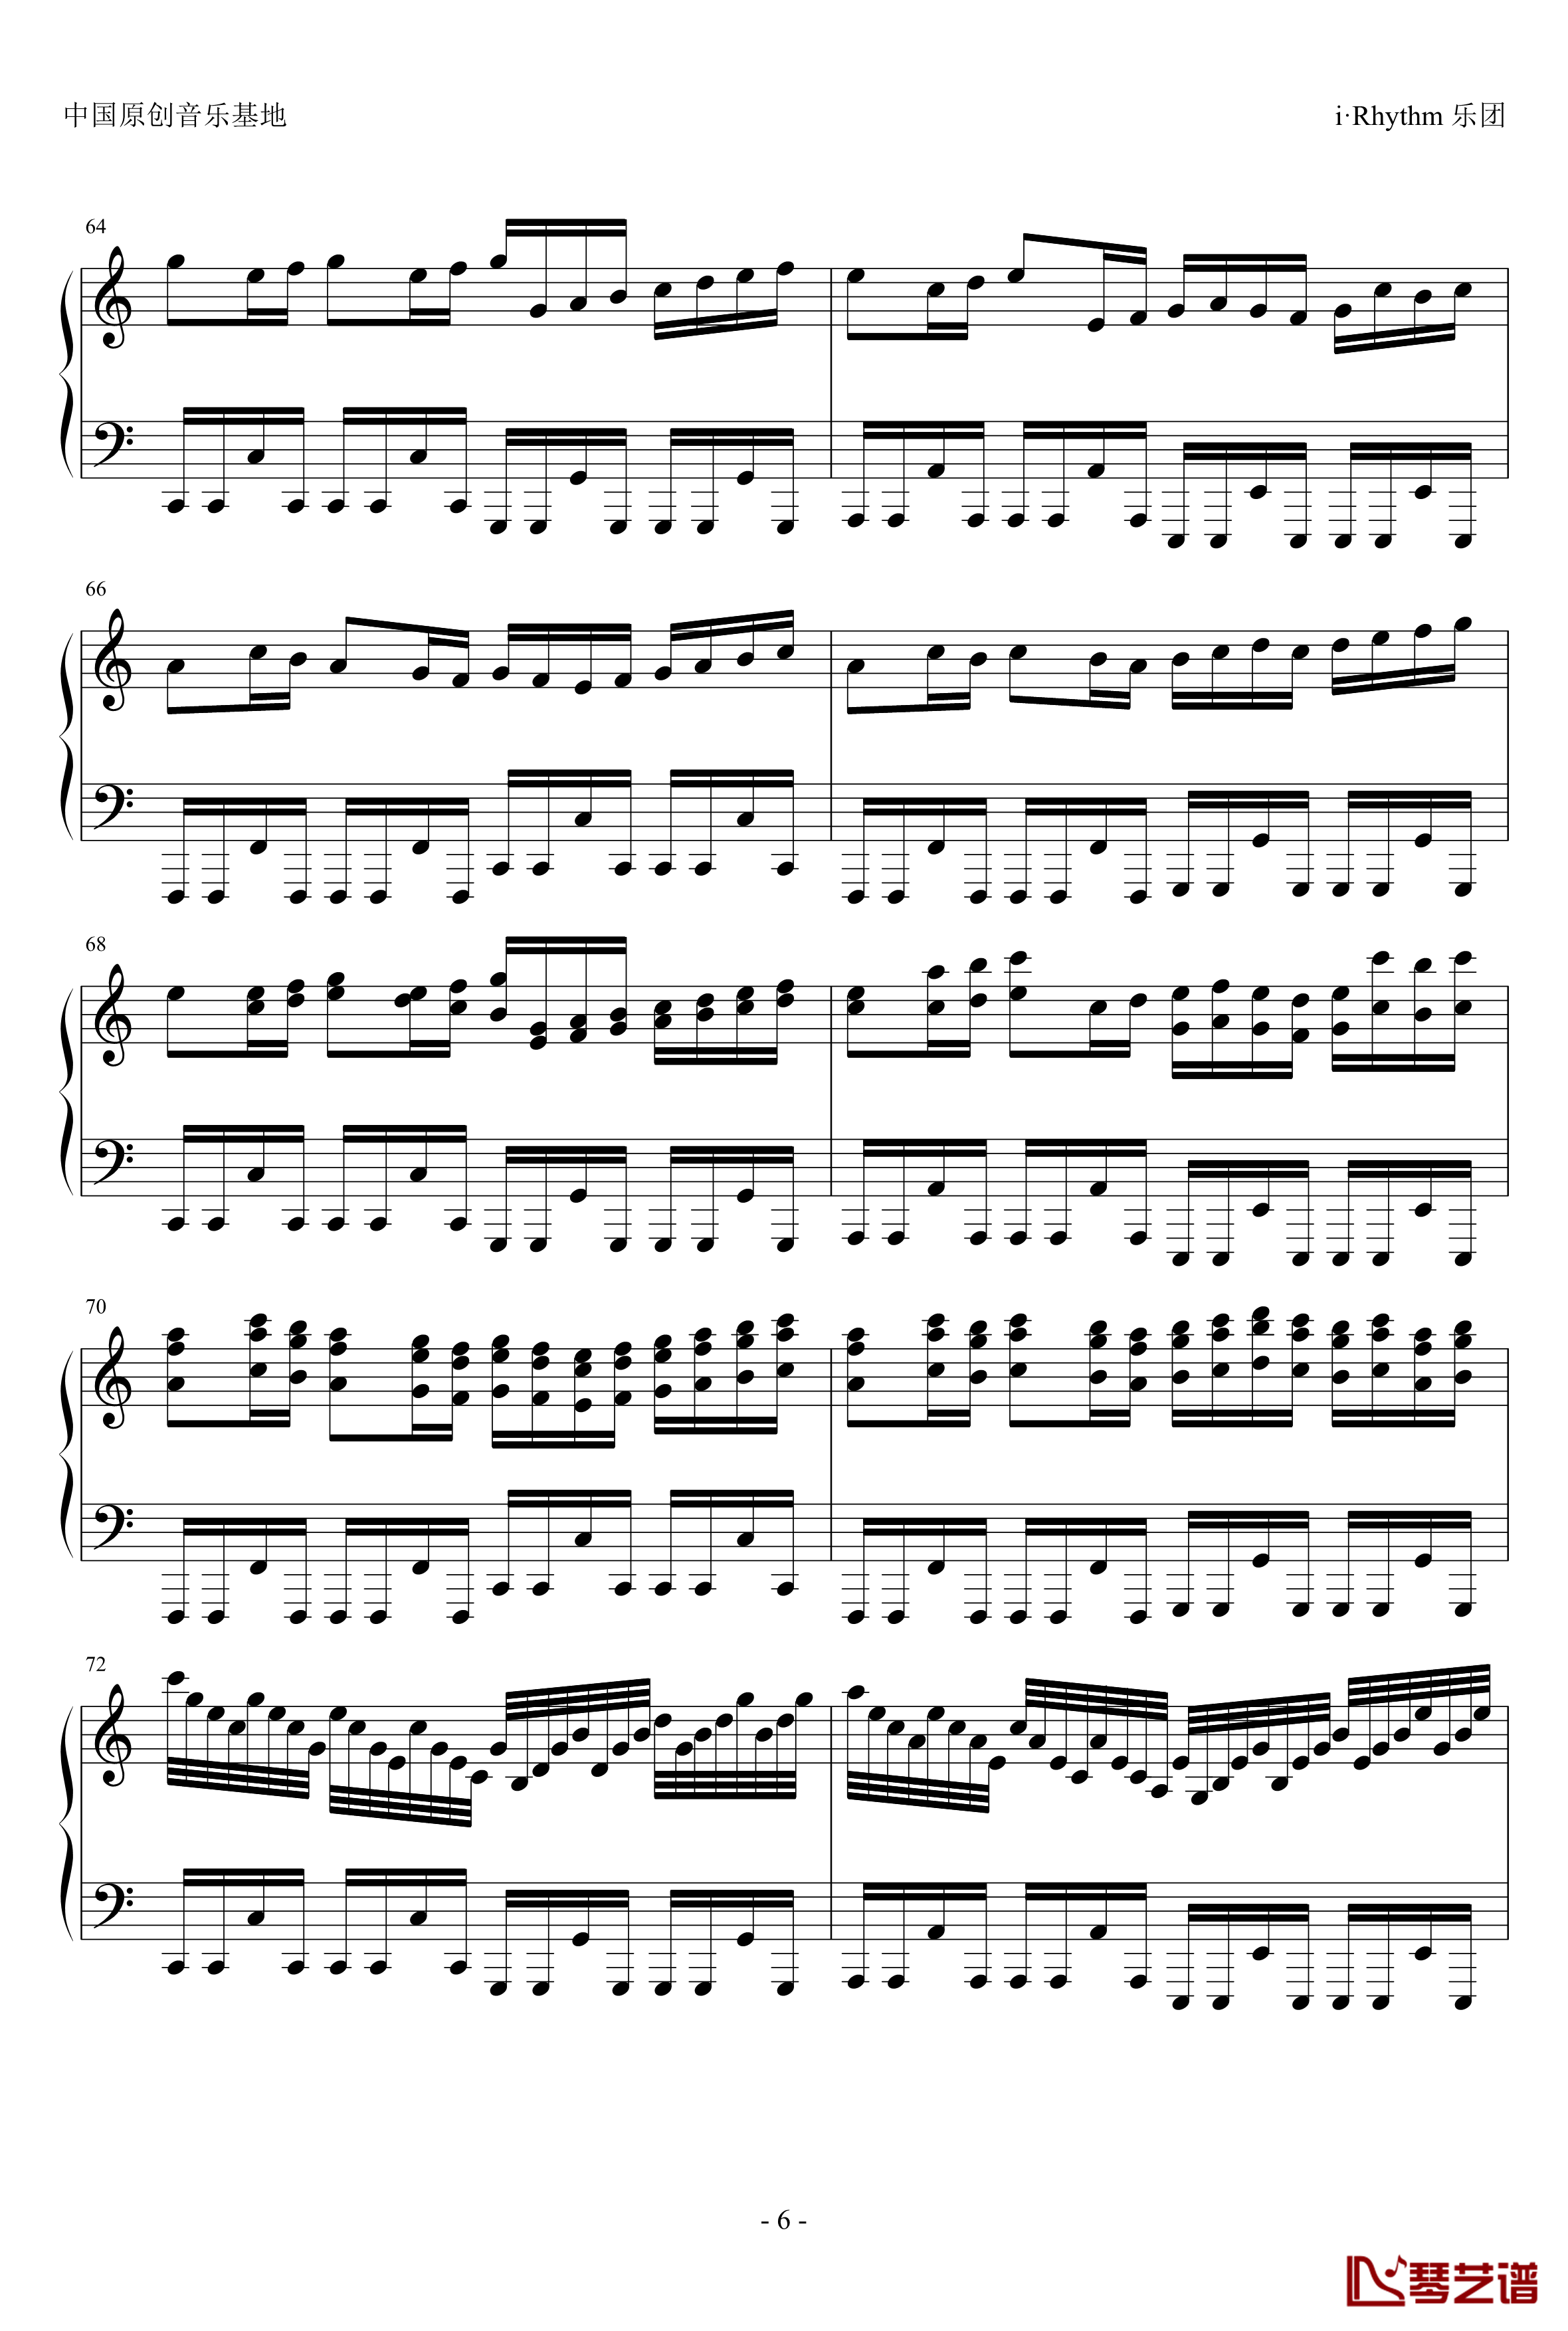 卡农钢琴谱-疯狂版-帕赫贝尔-Pachelbel6